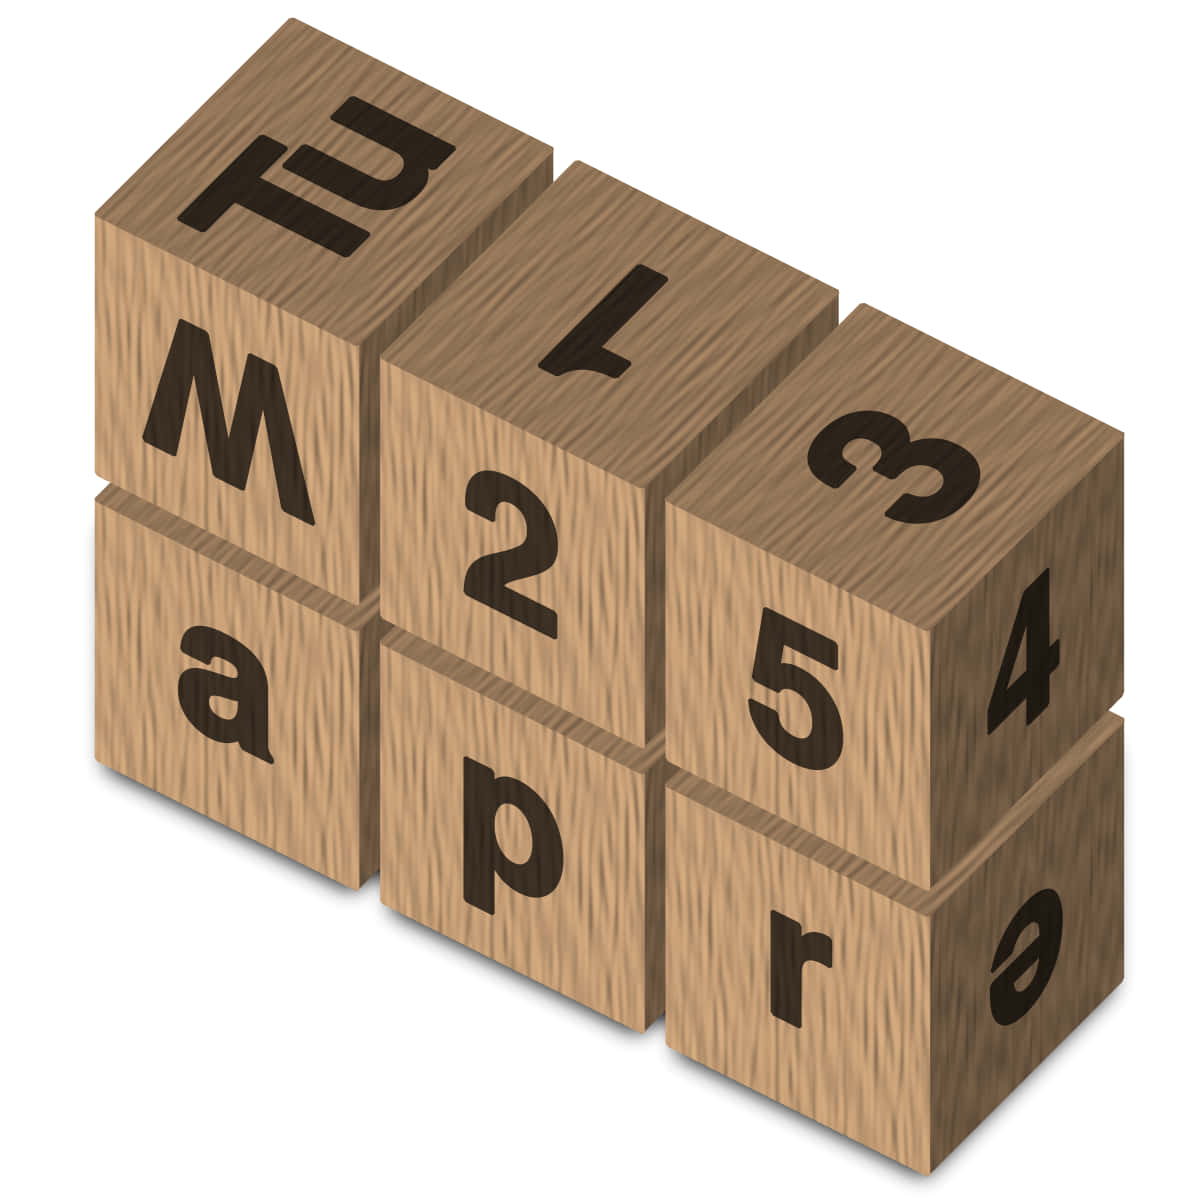 Числовой кубик. Календарь из кубиков. Календарь из двух кубиков с цифрами. Деревянный календарь с кубиками. Игра числовые кубики